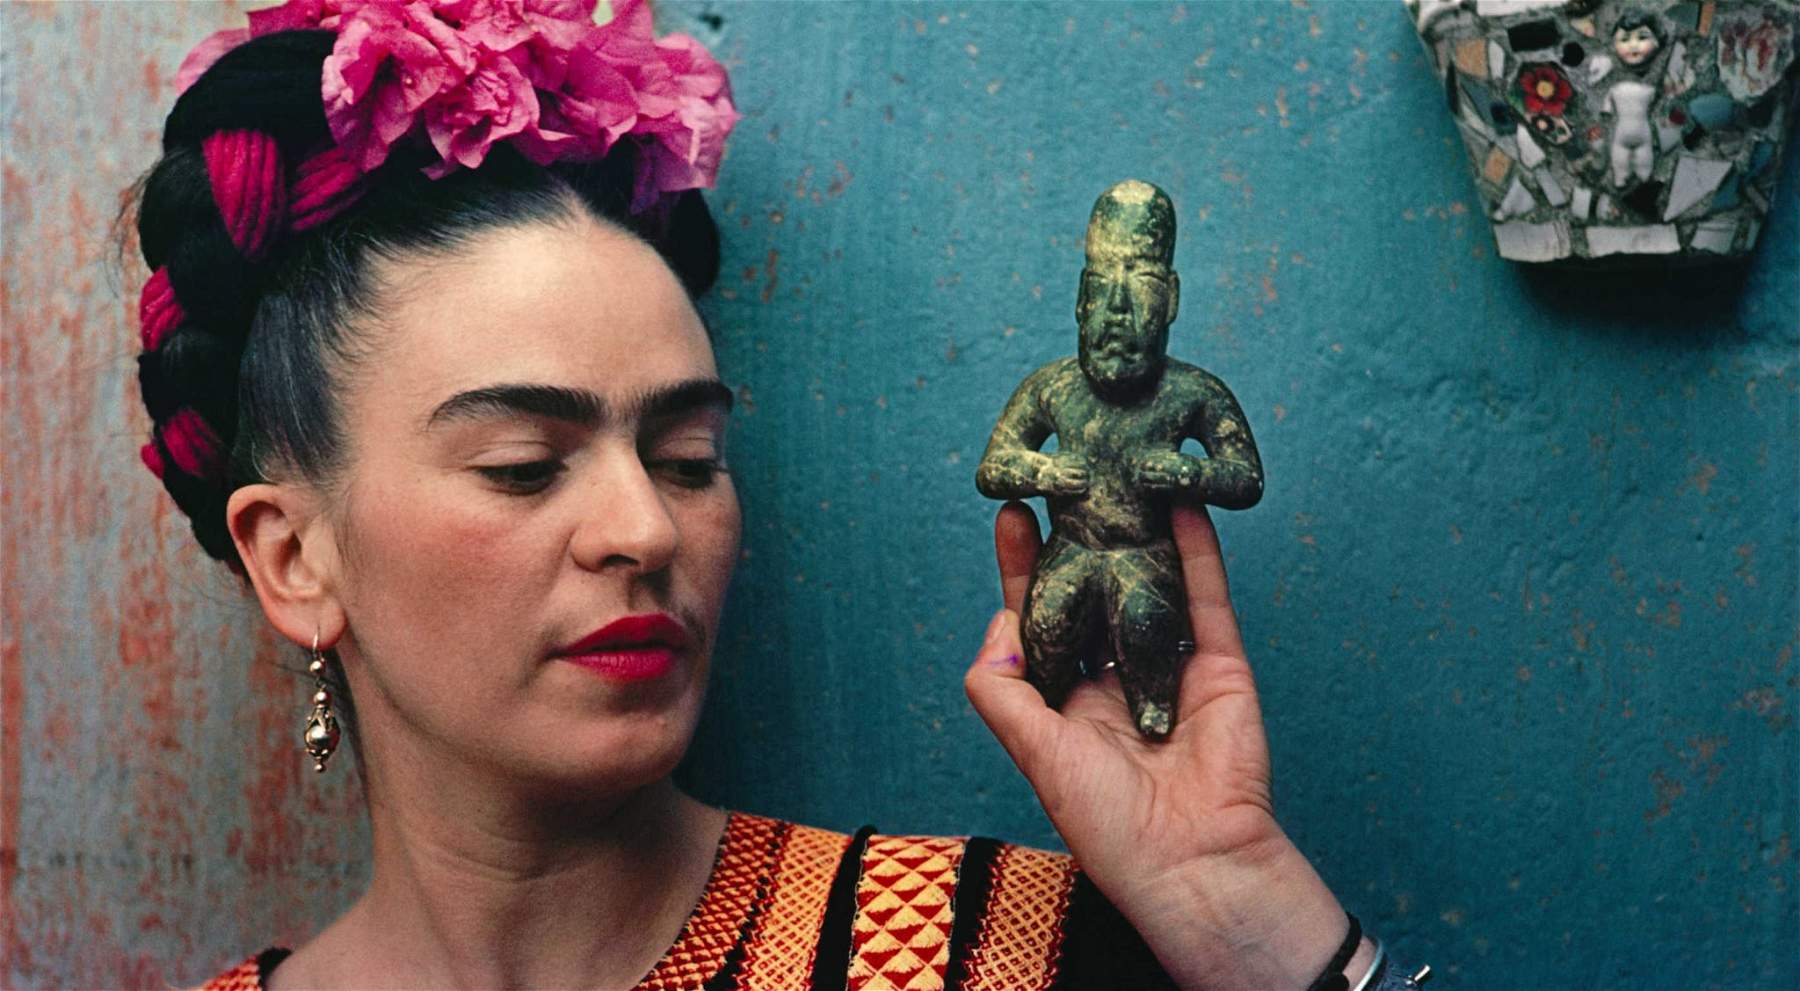 Hungary, Frida Kahlo exhibition criticized and accused of making communist propaganda